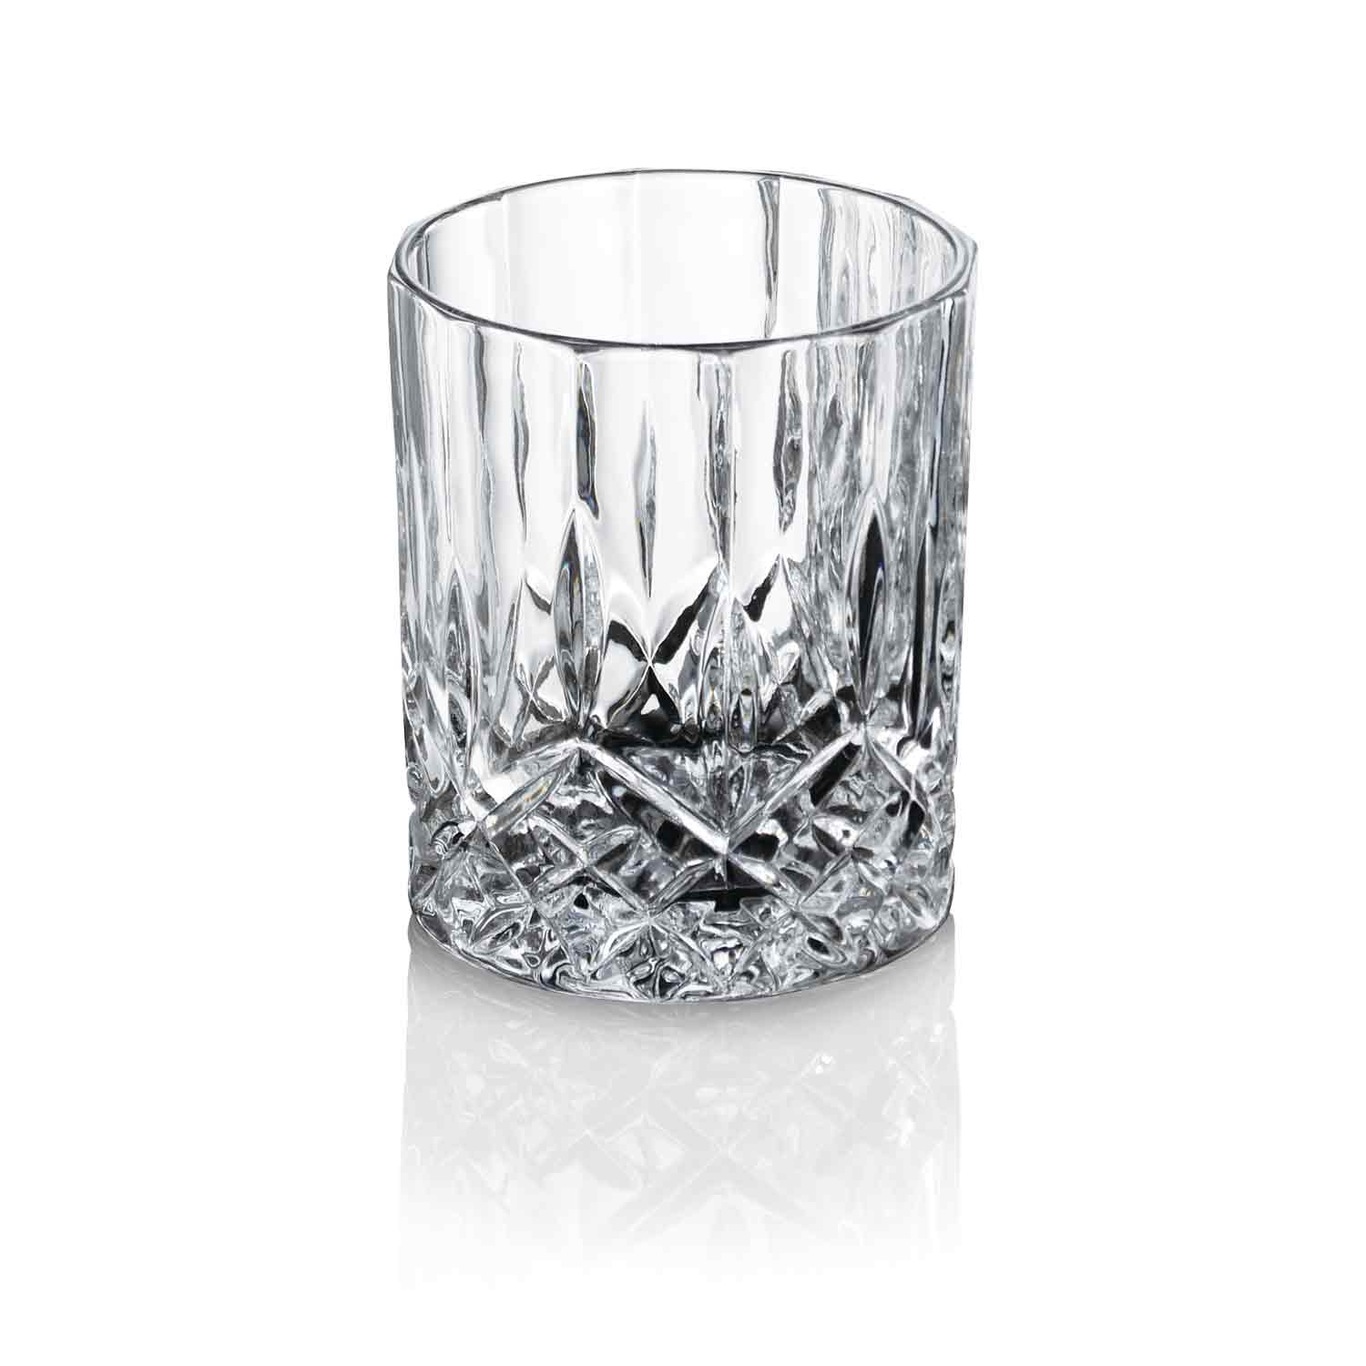 Harvey Cocktail Glass 24 cl 4-Pcs, Clear